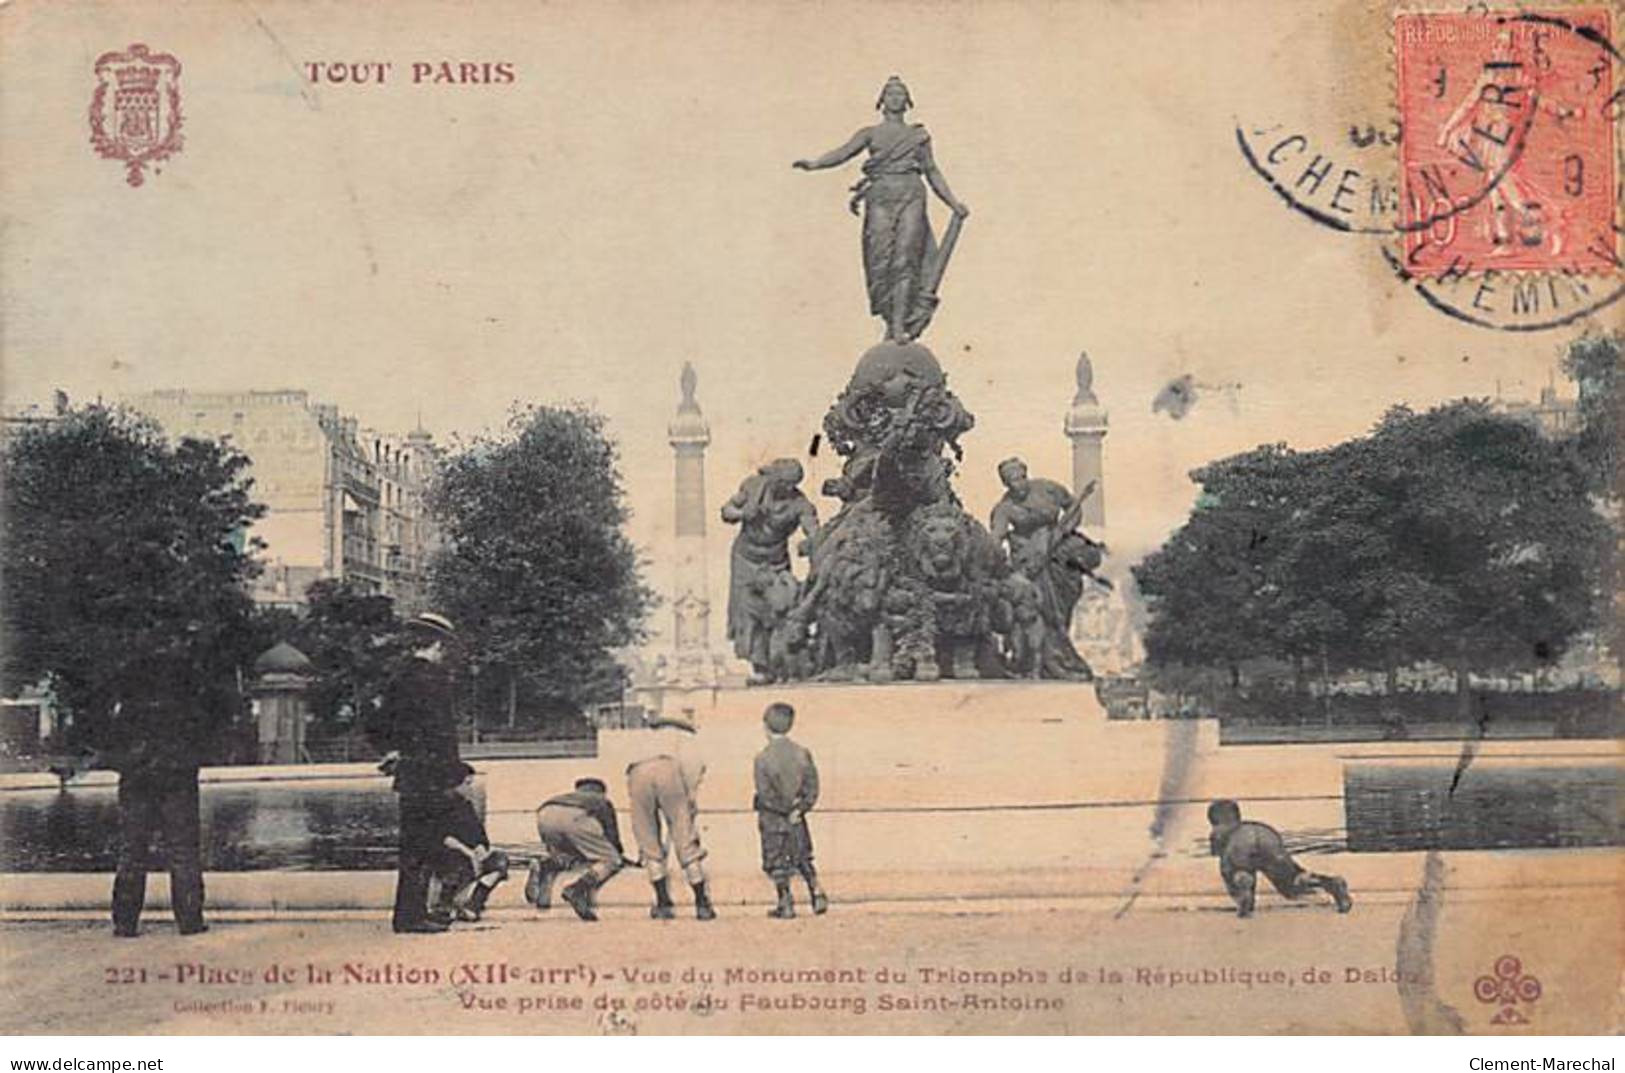 TOUT PARIS - Place De La Nation - F. Fleury - état - Arrondissement: 12